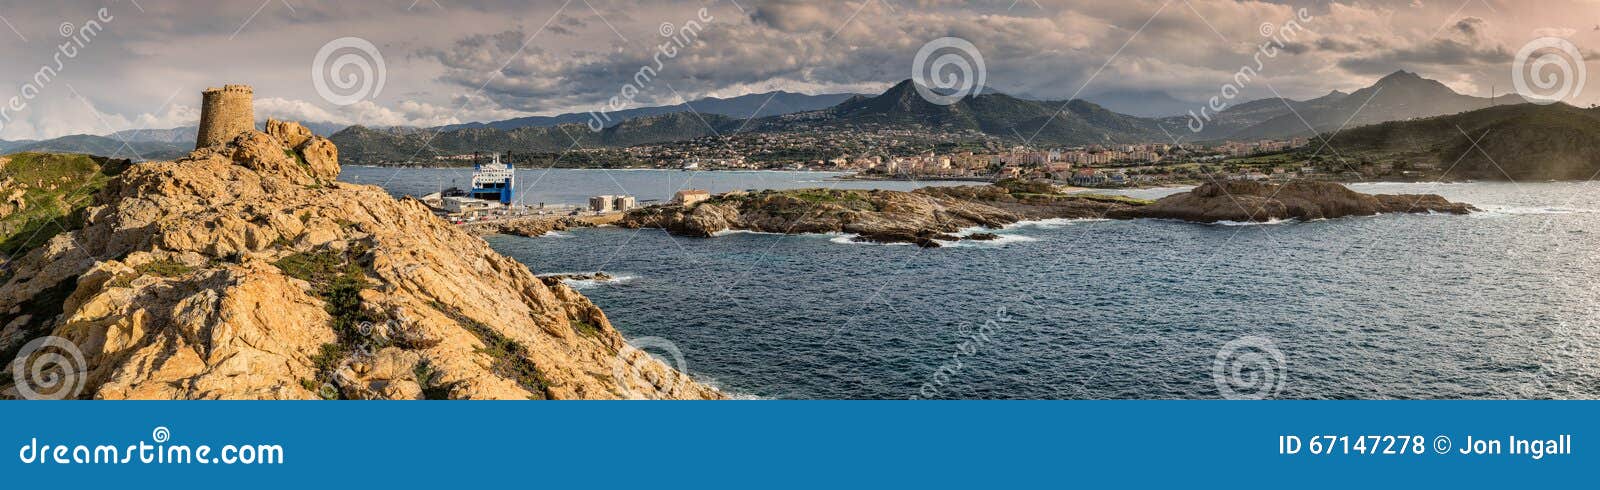 Vue Panoramique Dile Rousse En Corse Photo Stock Image Du